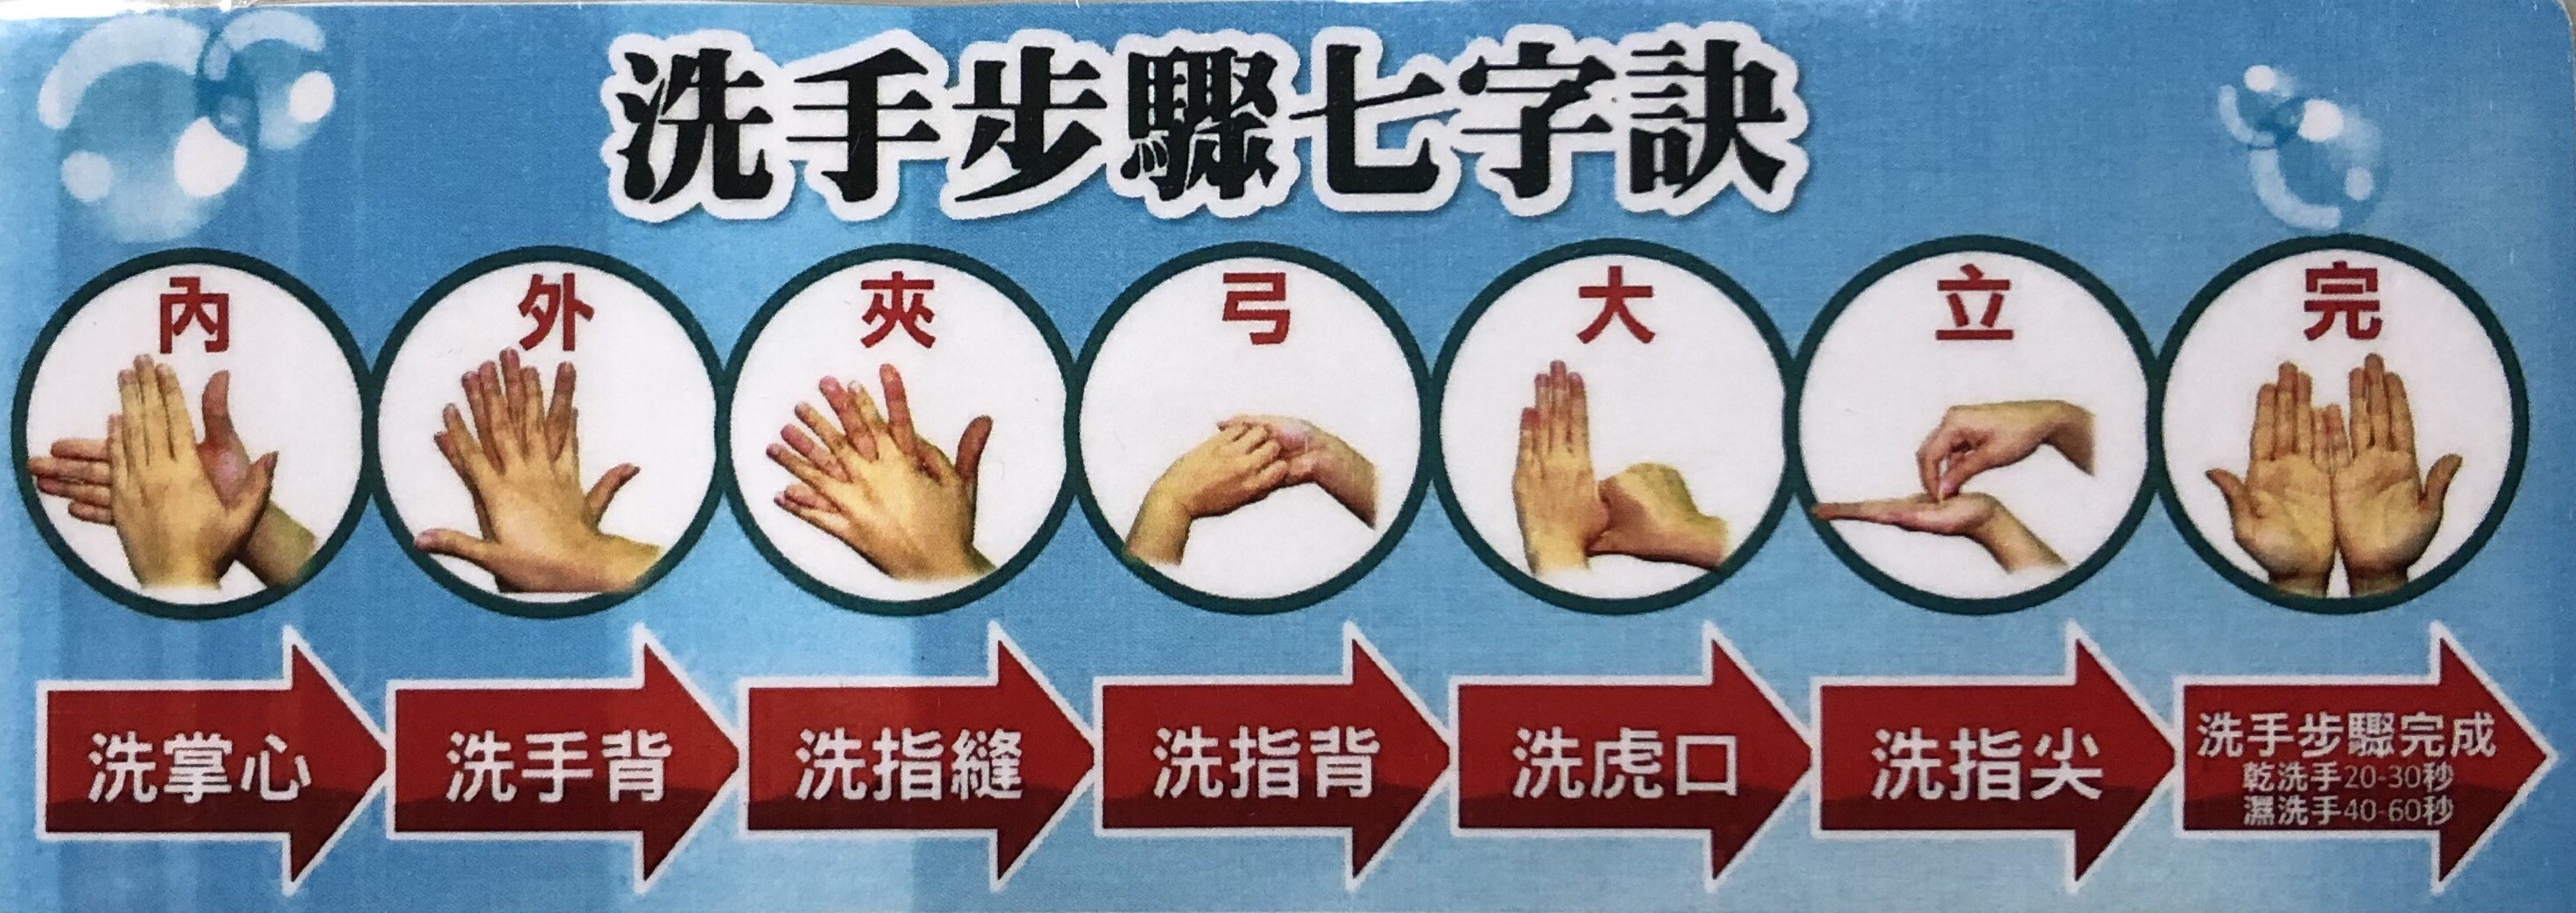 洗手步驟七字訣